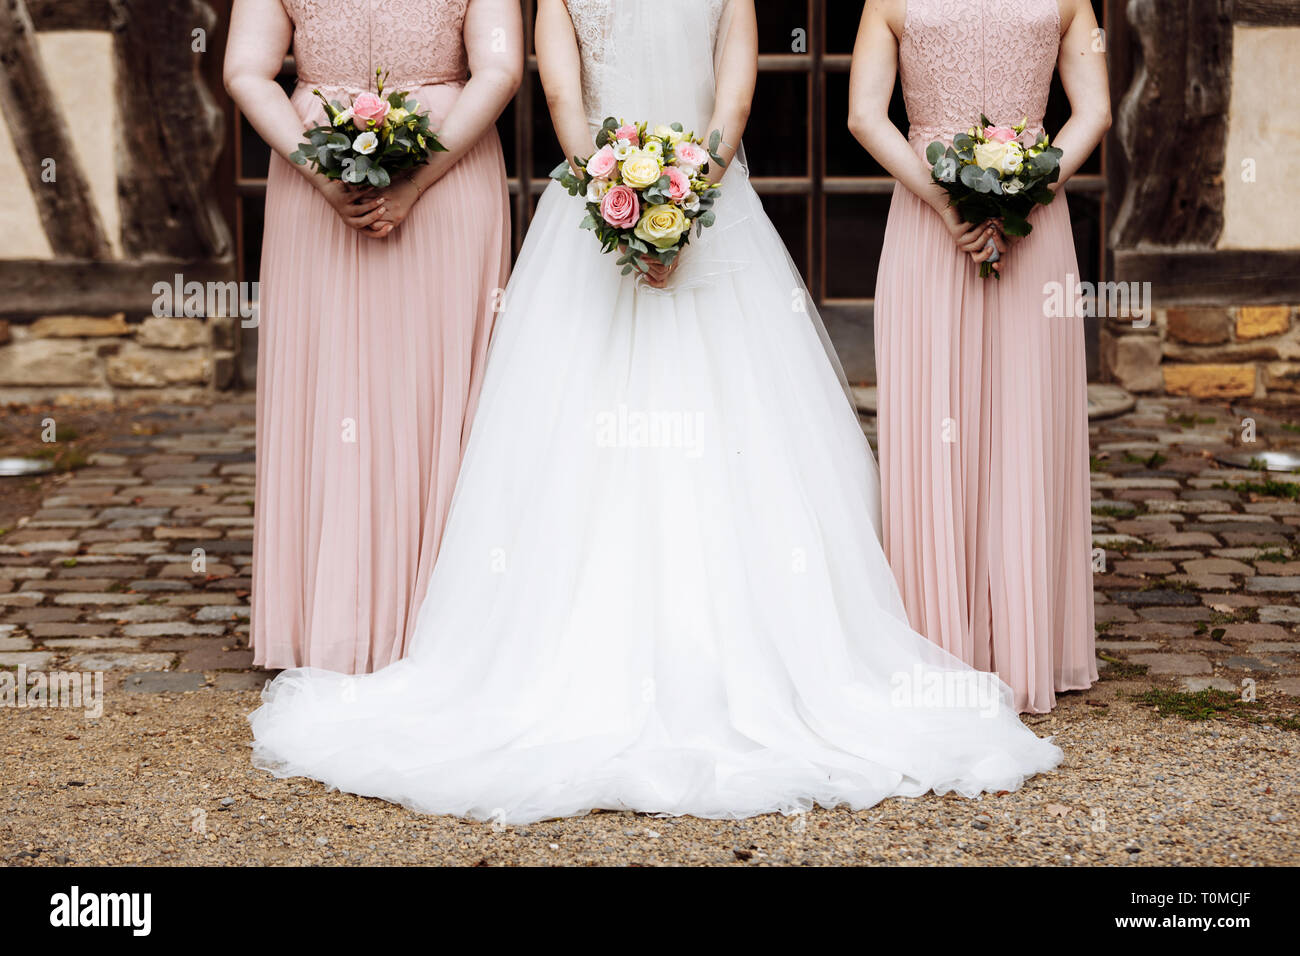 siga adelante helado igual La novia y las damas de honor en un elegante vestido está de pie y  sosteniendo la mano ramilletes de flores de color rosa pastel y verdes con  cinta en la naturaleza.